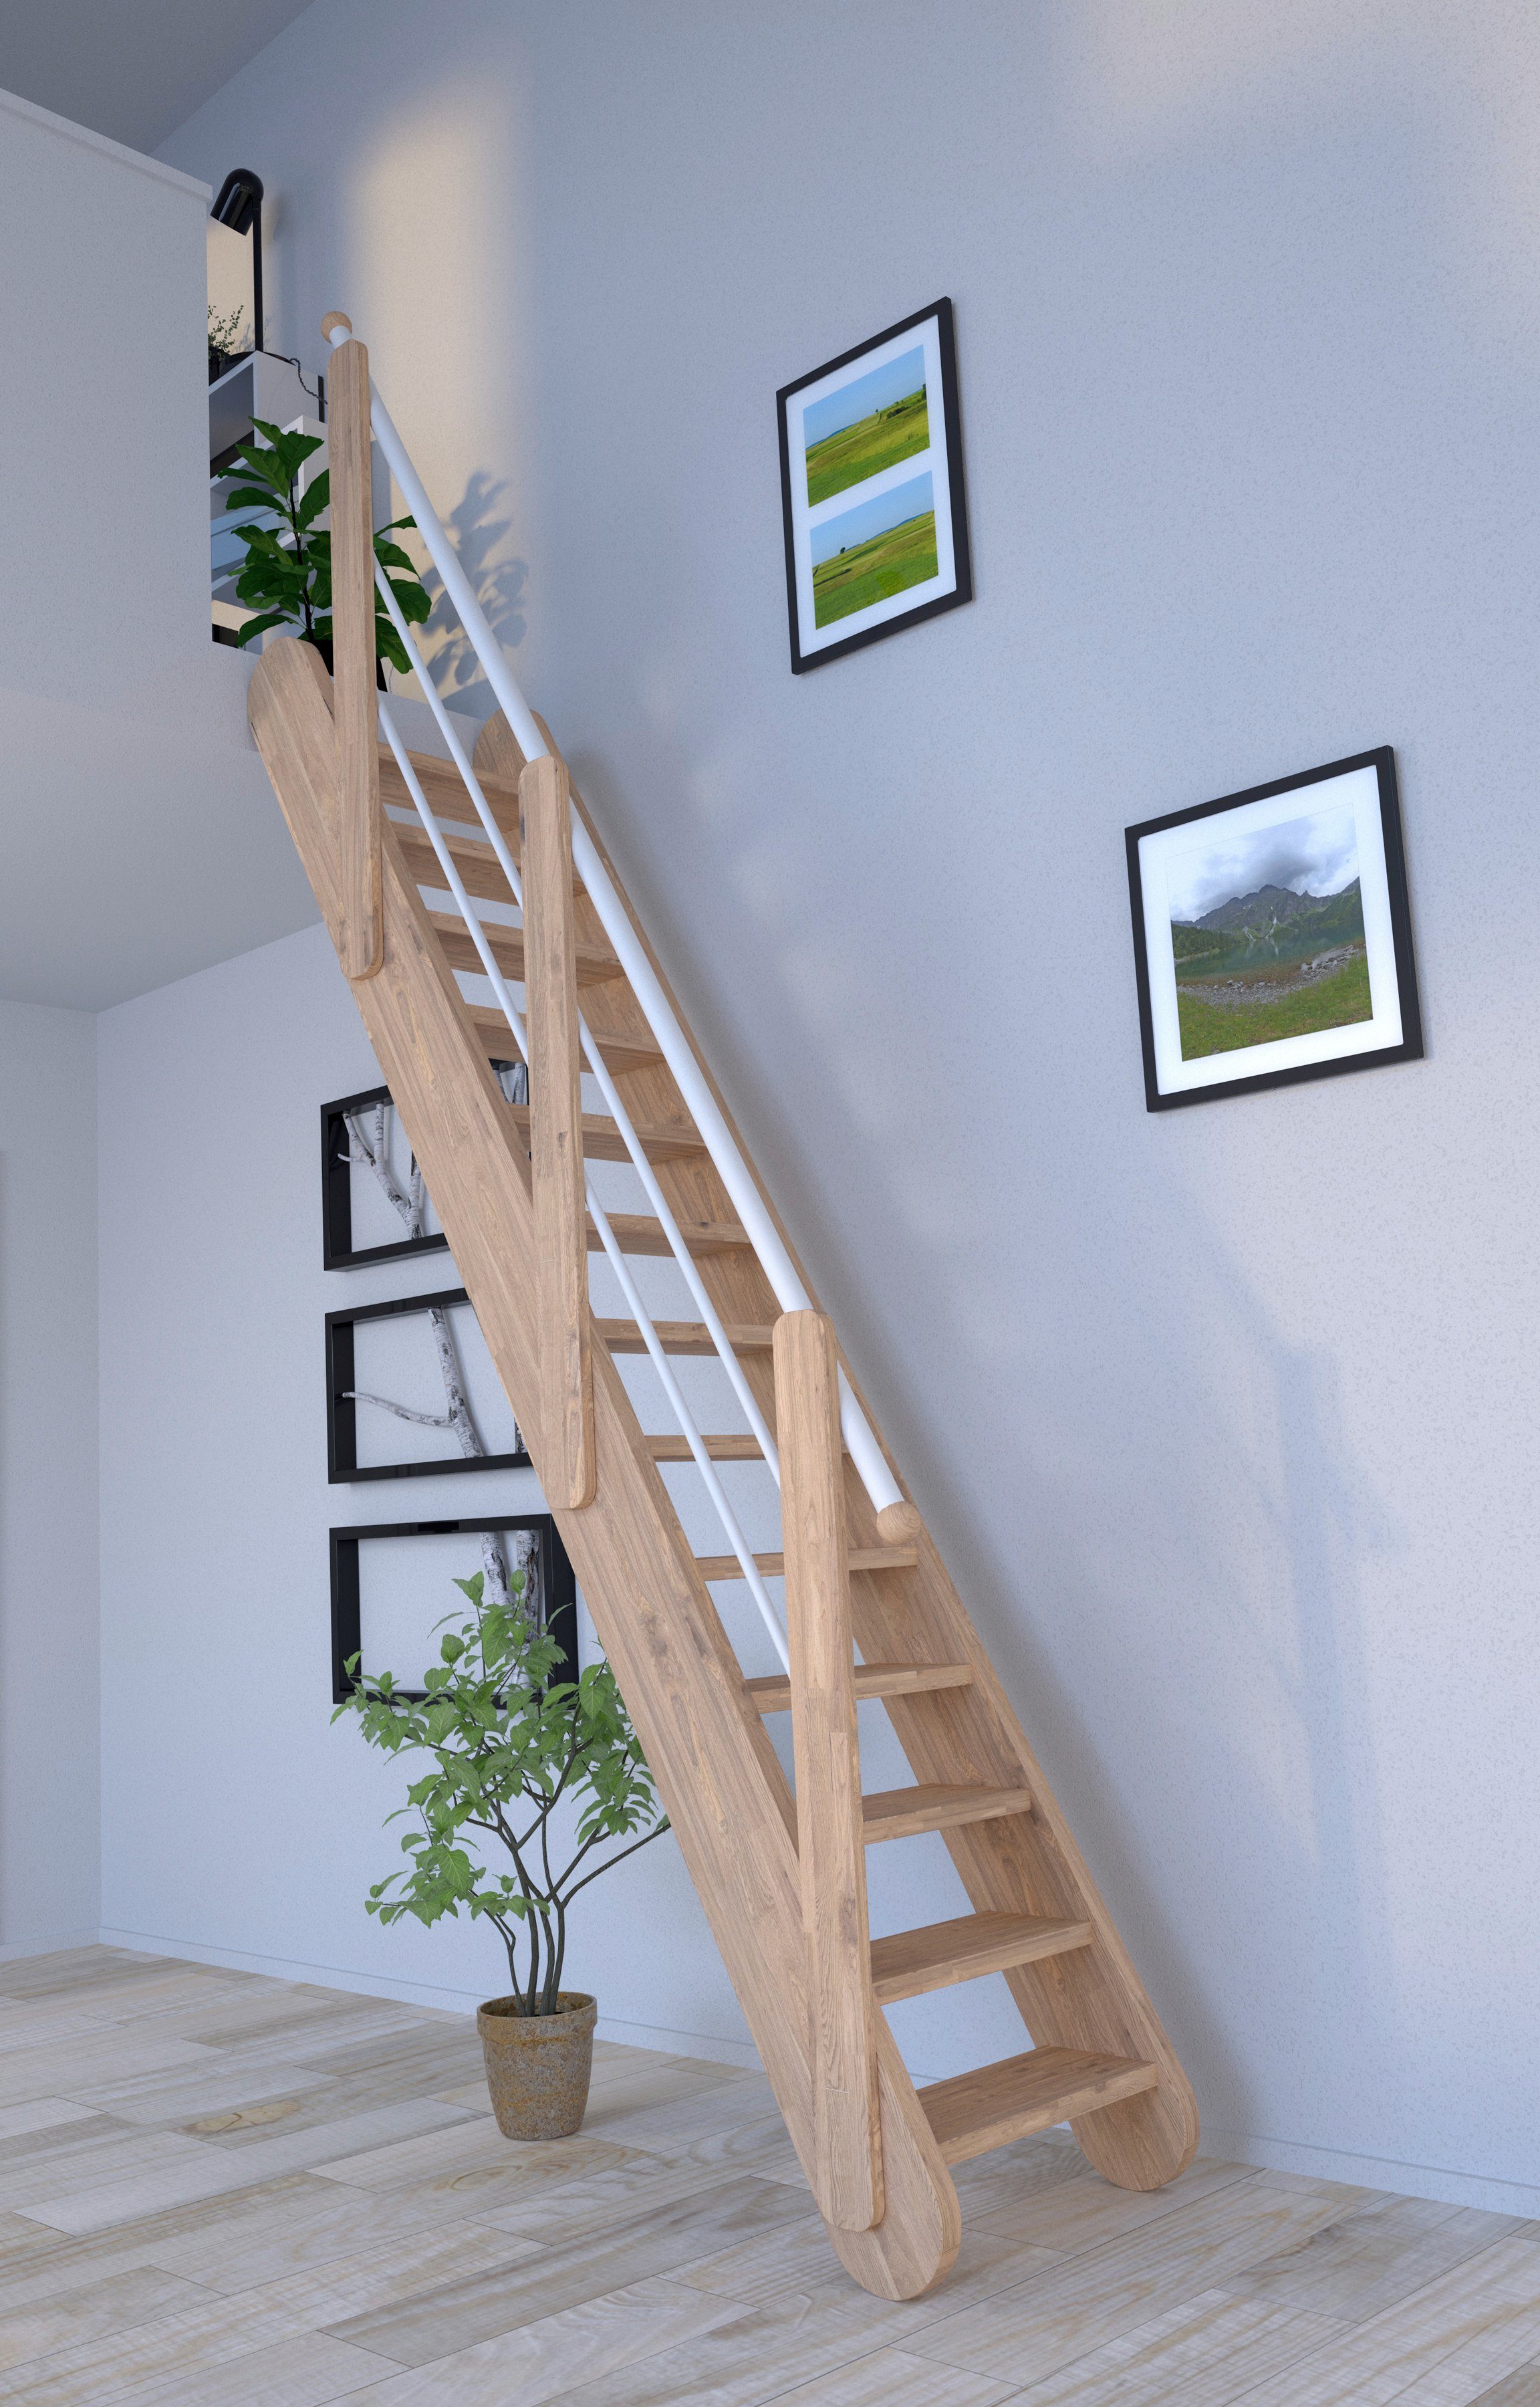 Wangenteile Starwood Raumspartreppe Durchgehende Massivholz Weiß, Samos, offen, Stufen Holz-Edelstahl